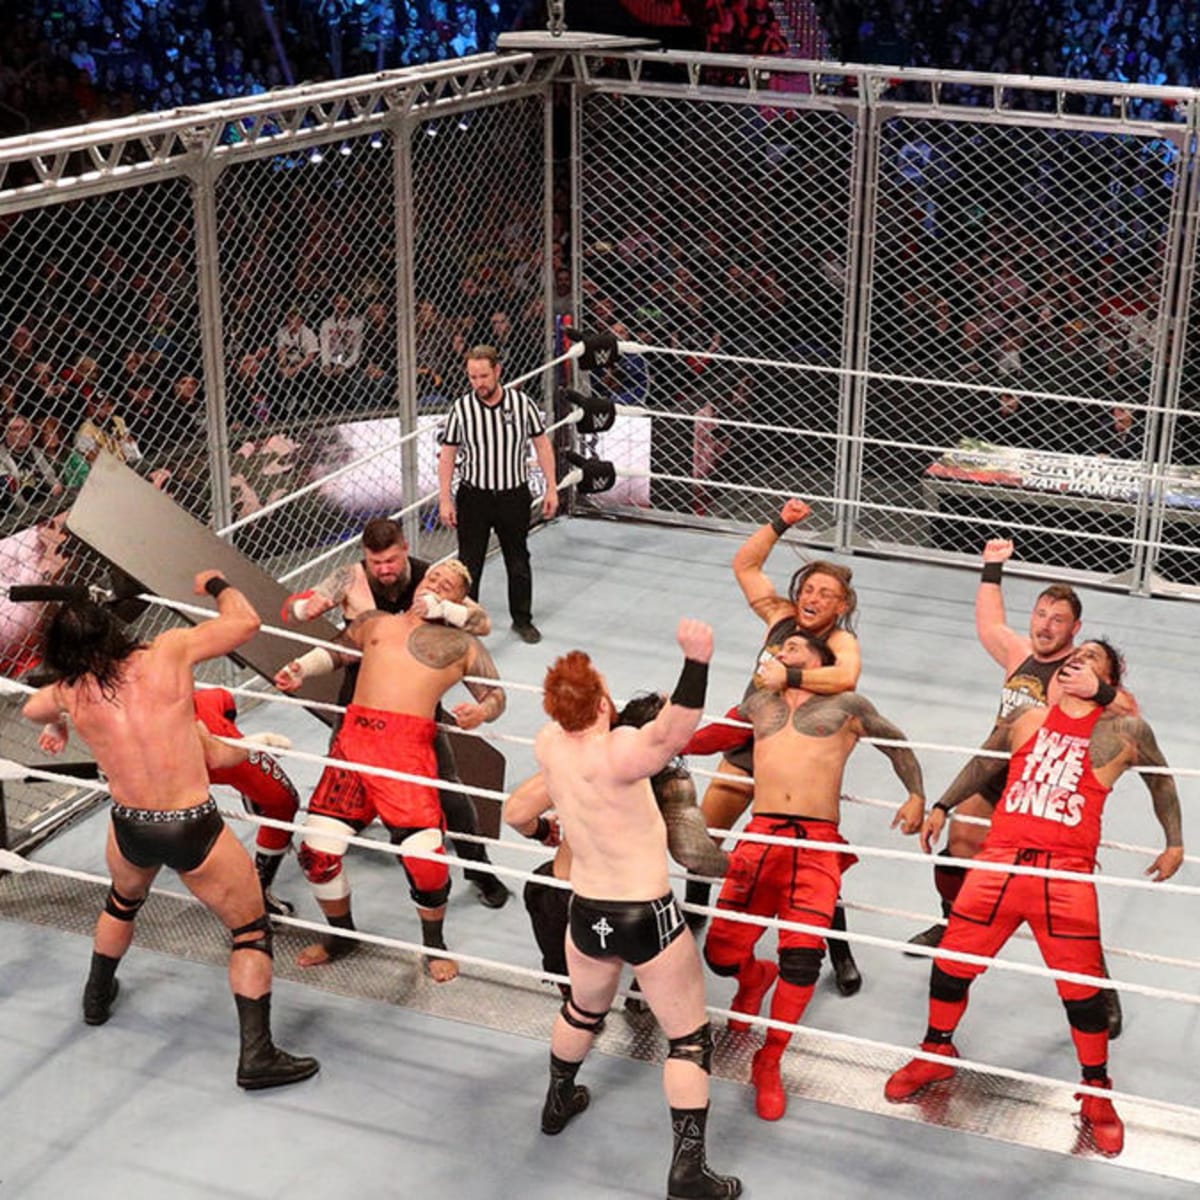 WWE's Survivor Series will return to TD Garden in 2022 - The Boston Globe